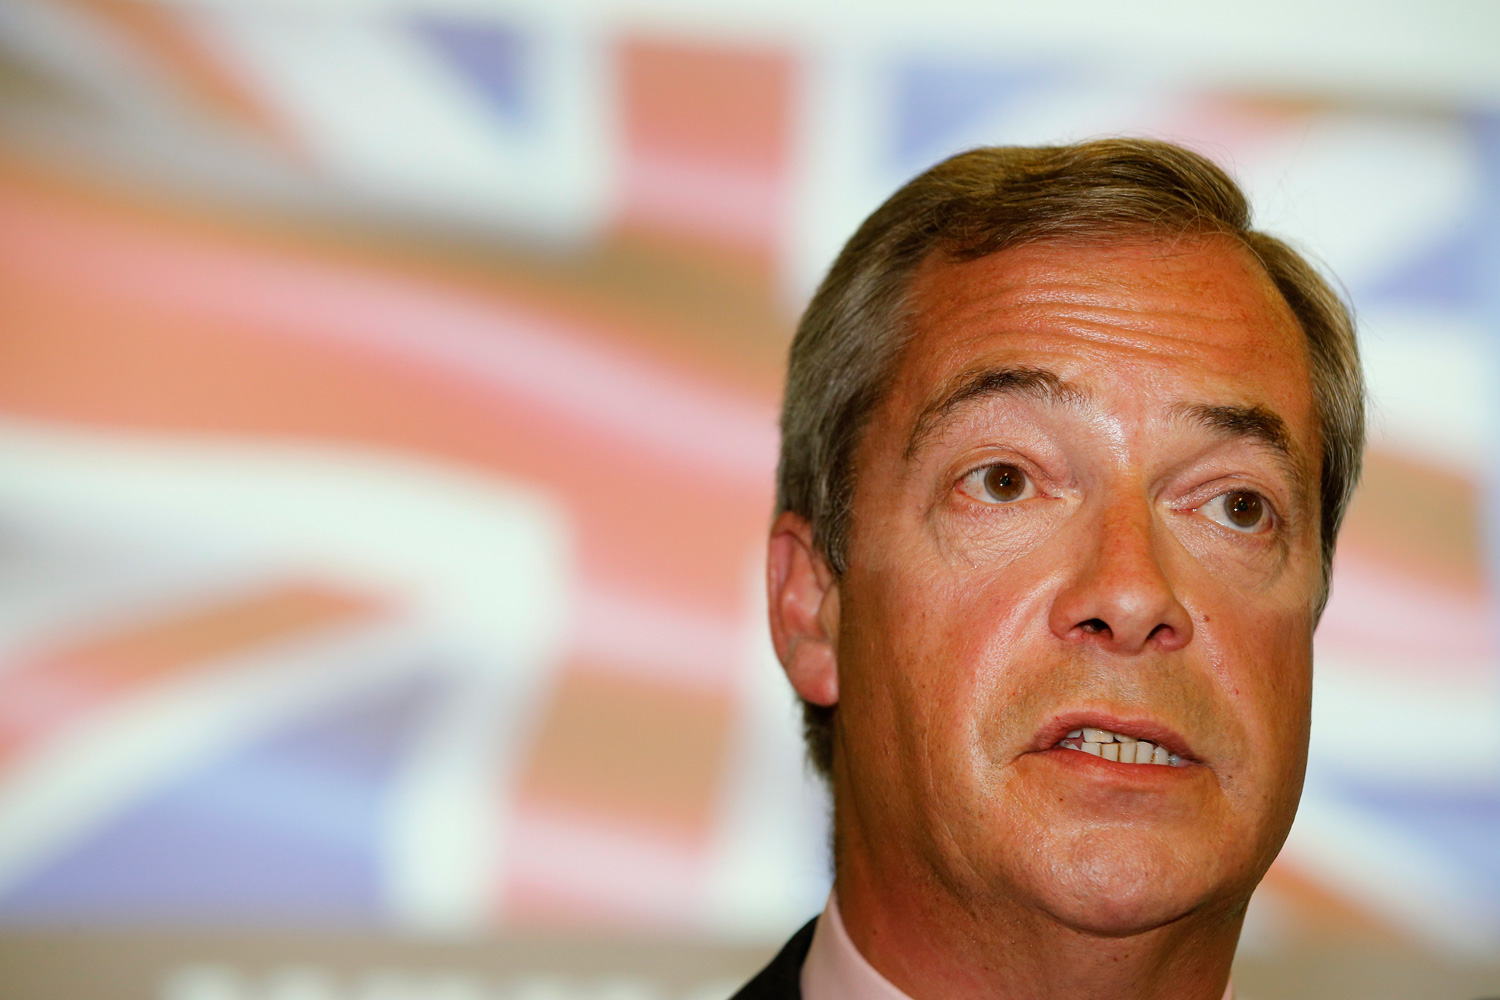 El ultranacionalista británico Nigel Farage critica las propuestas migratorias de Trump